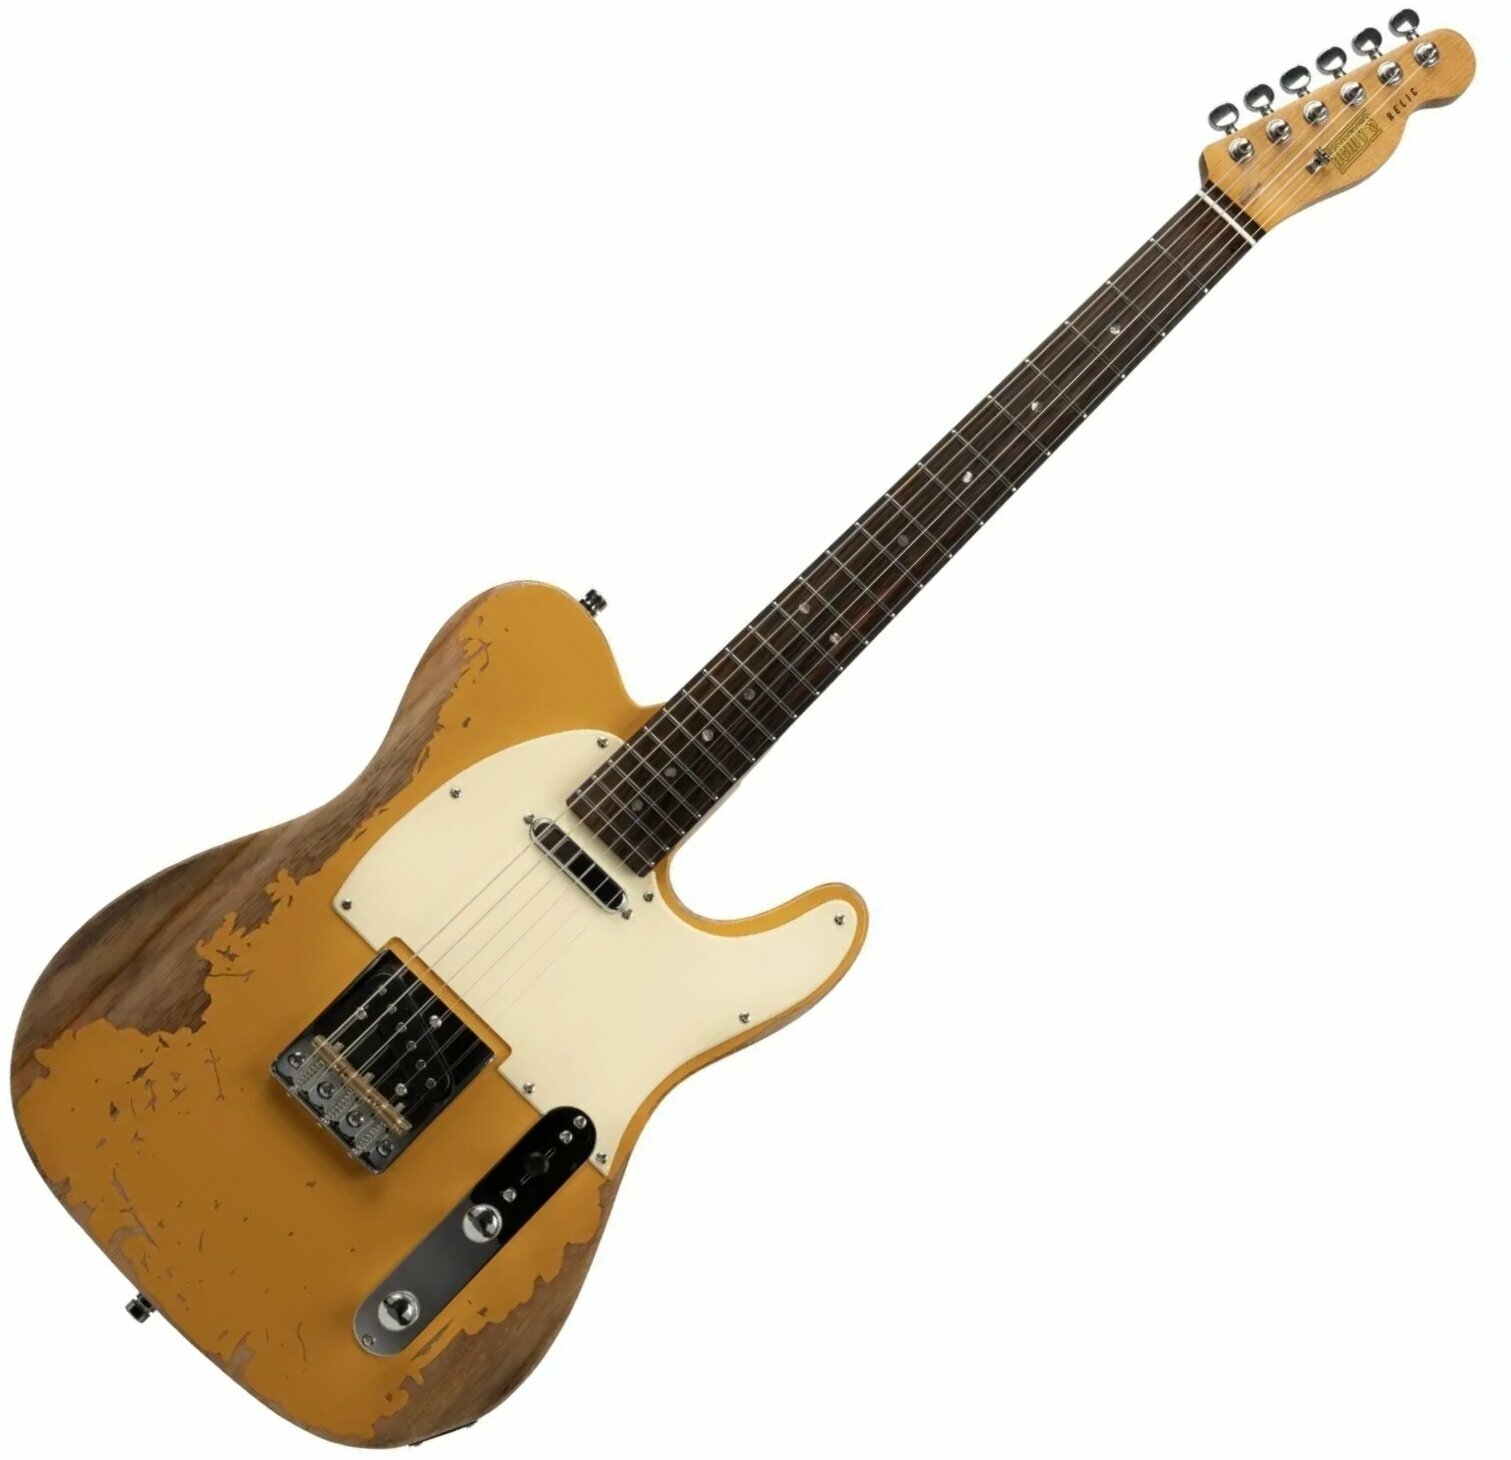 Elektrische gitaar Henry's TL-1 The Comet Yellow Relic